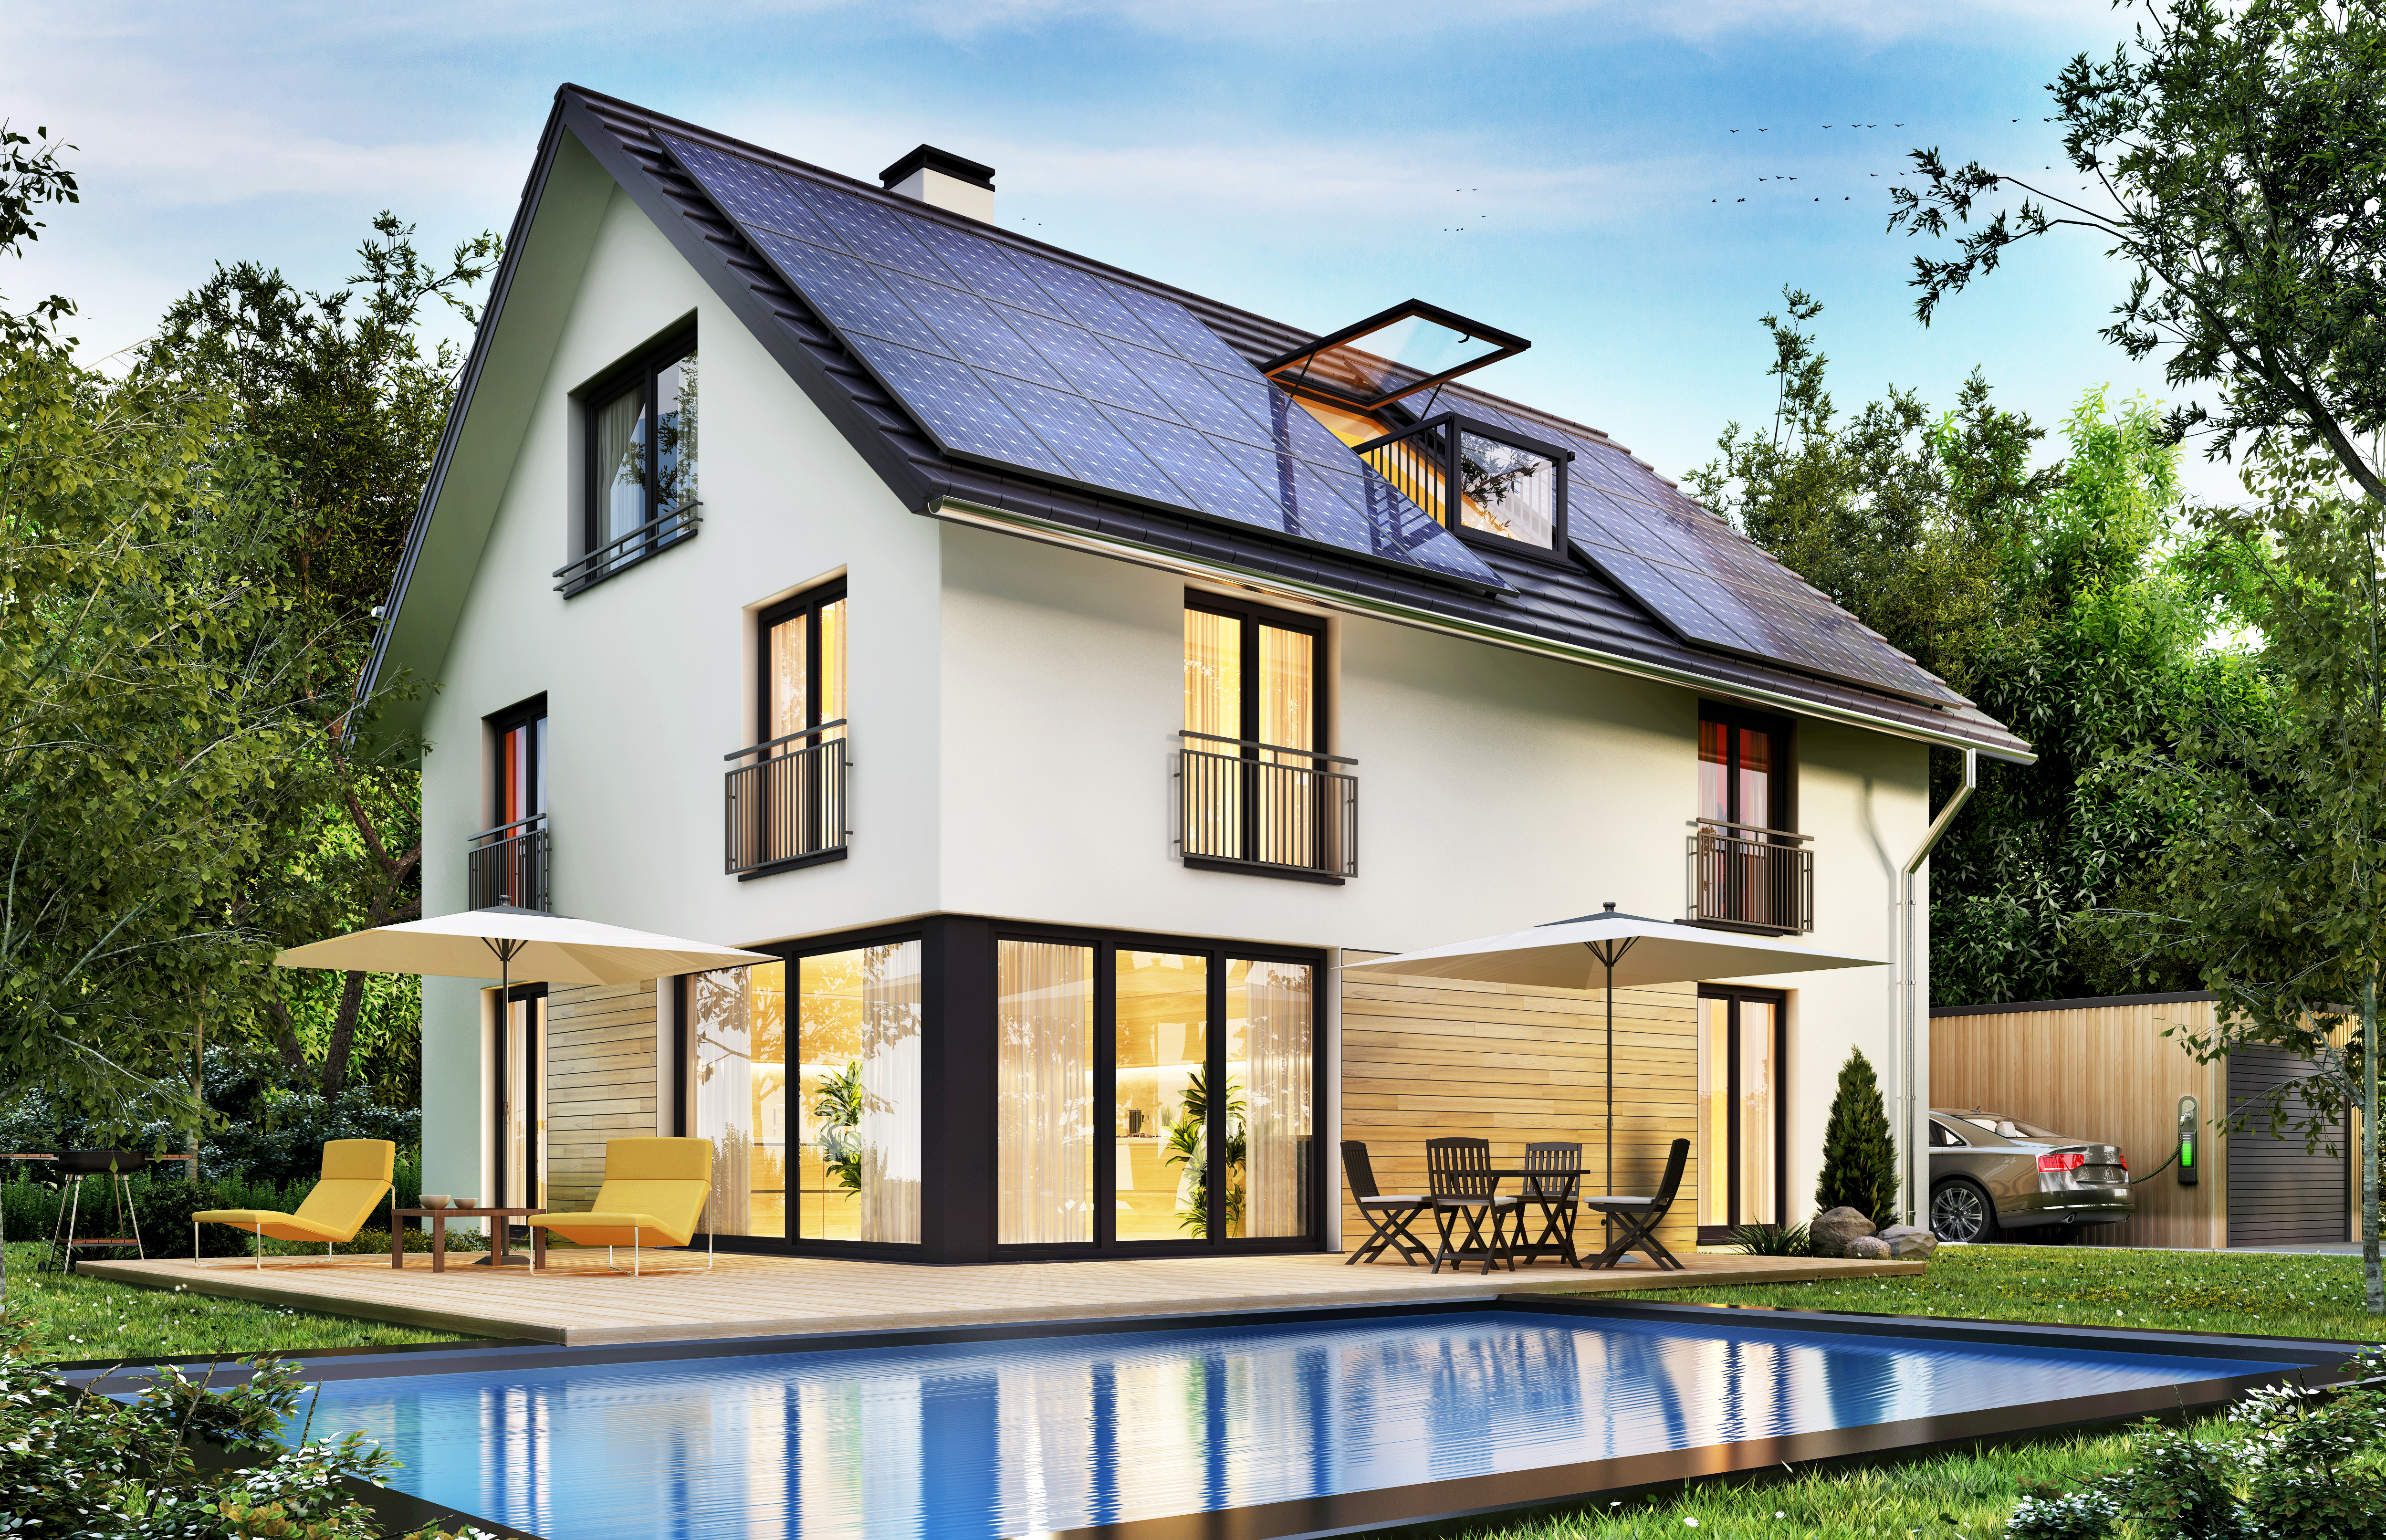 Solar home - Clear Solar